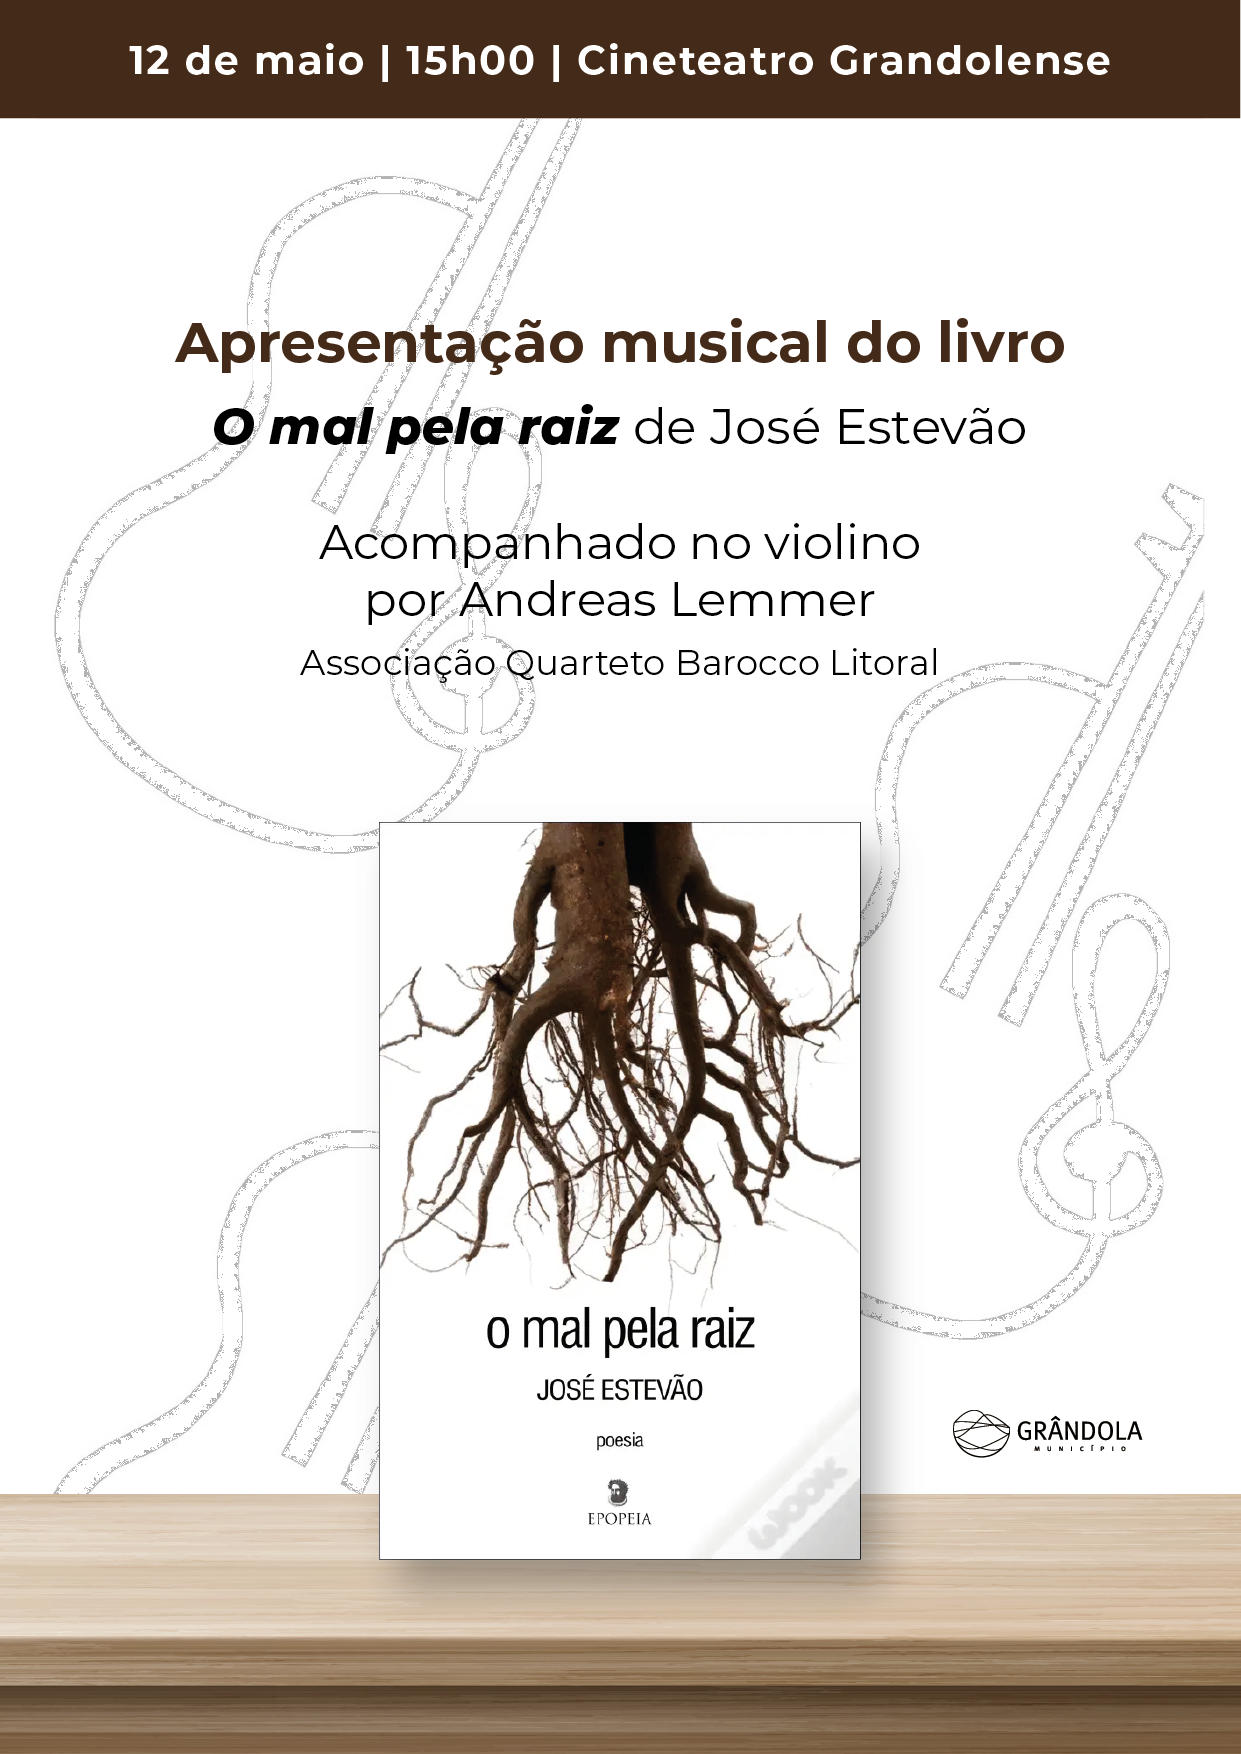 LITERATURA | Sessão de Apresentação do musical do Livro " O Mal pela Raíz " de José Estevão